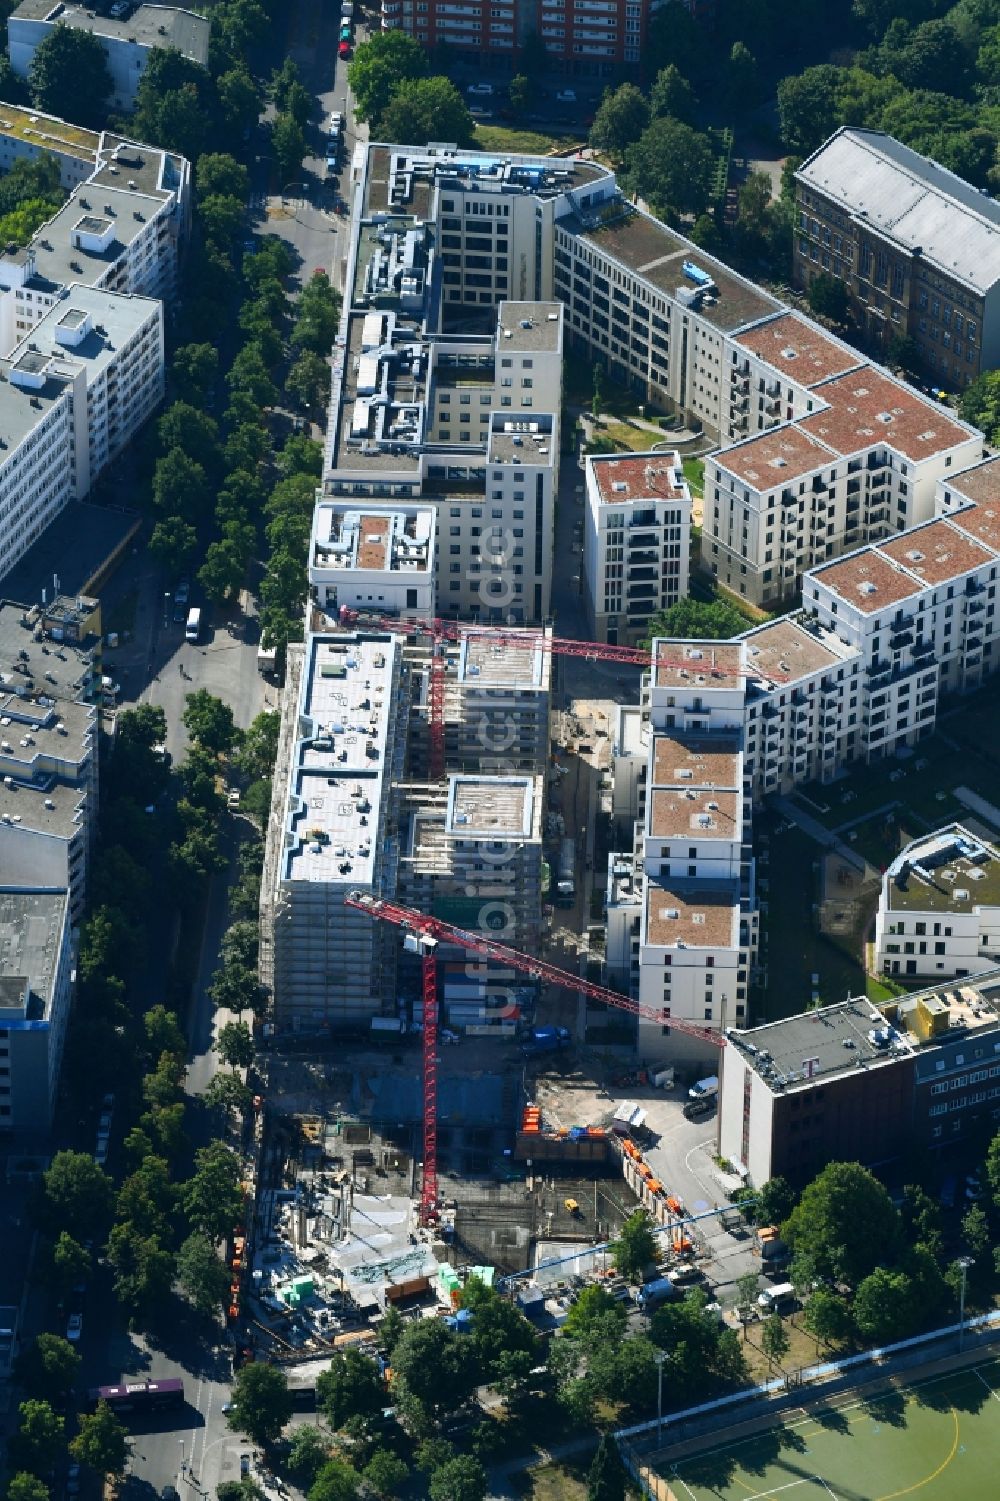 Luftbild Berlin - Baustelle zum Neubau von Wohn- und Bürogebäuden in Berlin, Deutschland